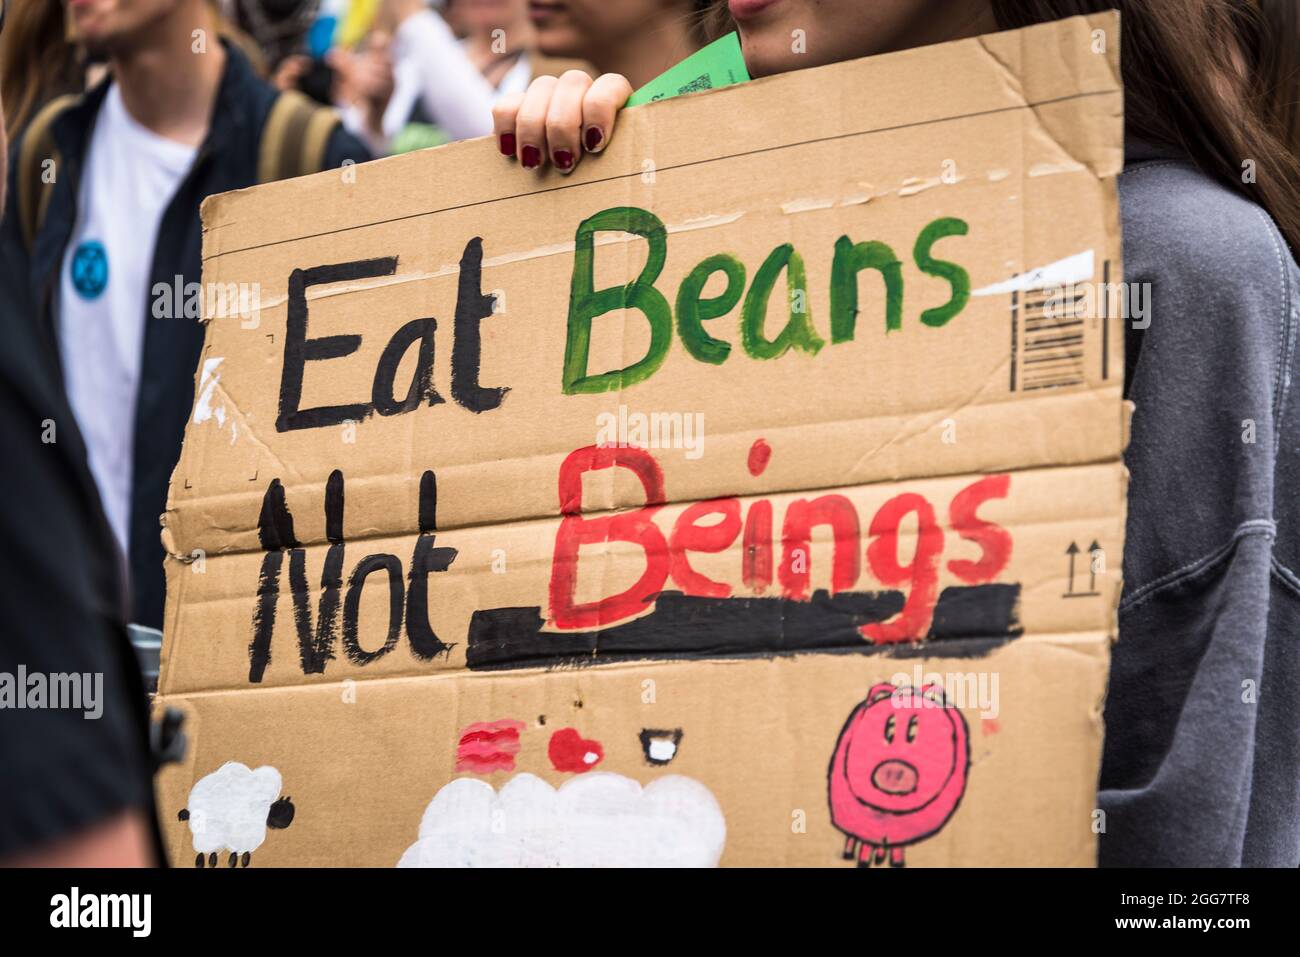 Eat Beans Not Hesses, National Animal Rights March, organizzato da Animal Rebellion and Extinction Rebellion nella città di Londra, Inghilterra, Regno Unito. Diverse migliaia di persone si sono unite al gruppo che ha fatto delle campagne per la transizione del nostro sistema alimentare a un sistema vegetale al fine di affrontare l'emergenza climatica. Agosto 28 2021 Foto Stock